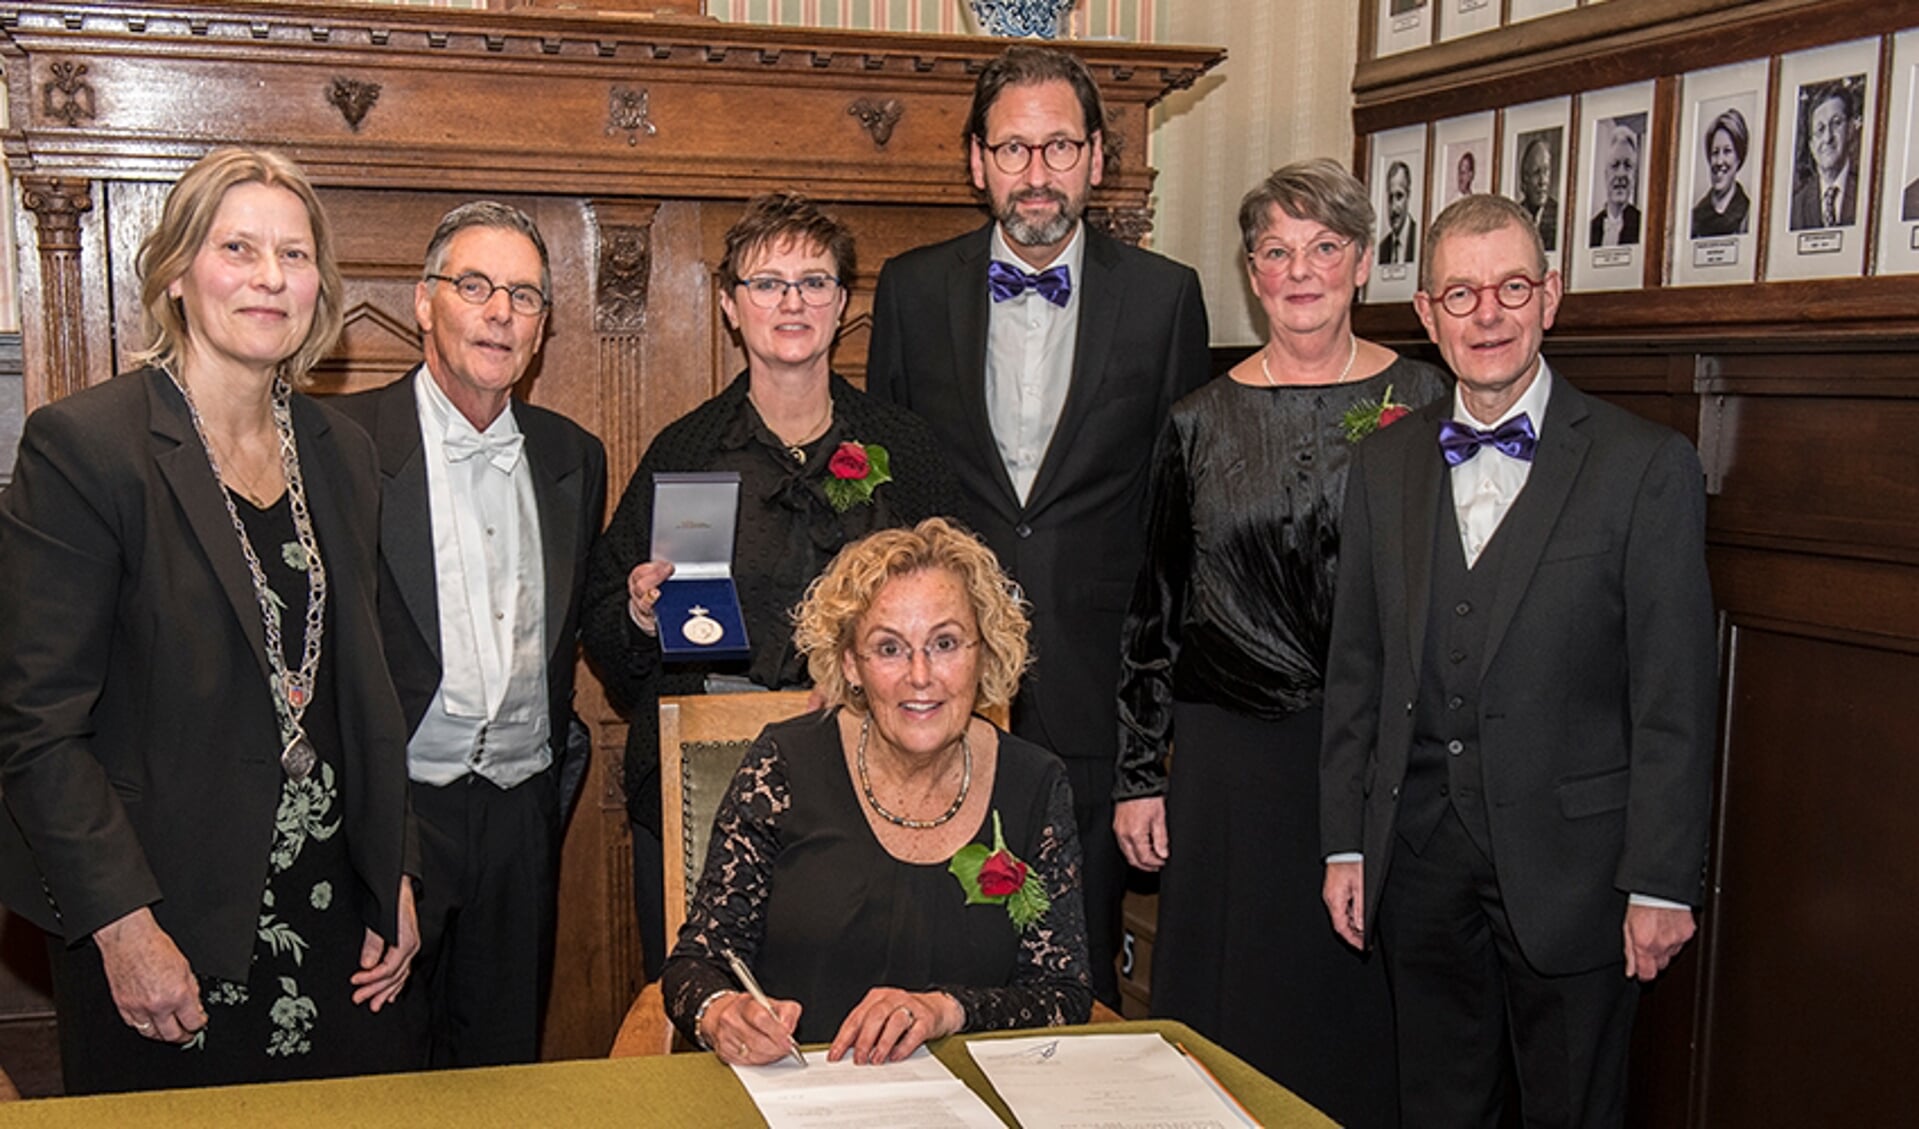 Voorzitter Addie Verspui tekent de papieren die horen bij de Koninklijke onderscheiding in het bijzijn van wethouder Molengraaf, dirigent en bestuur. 